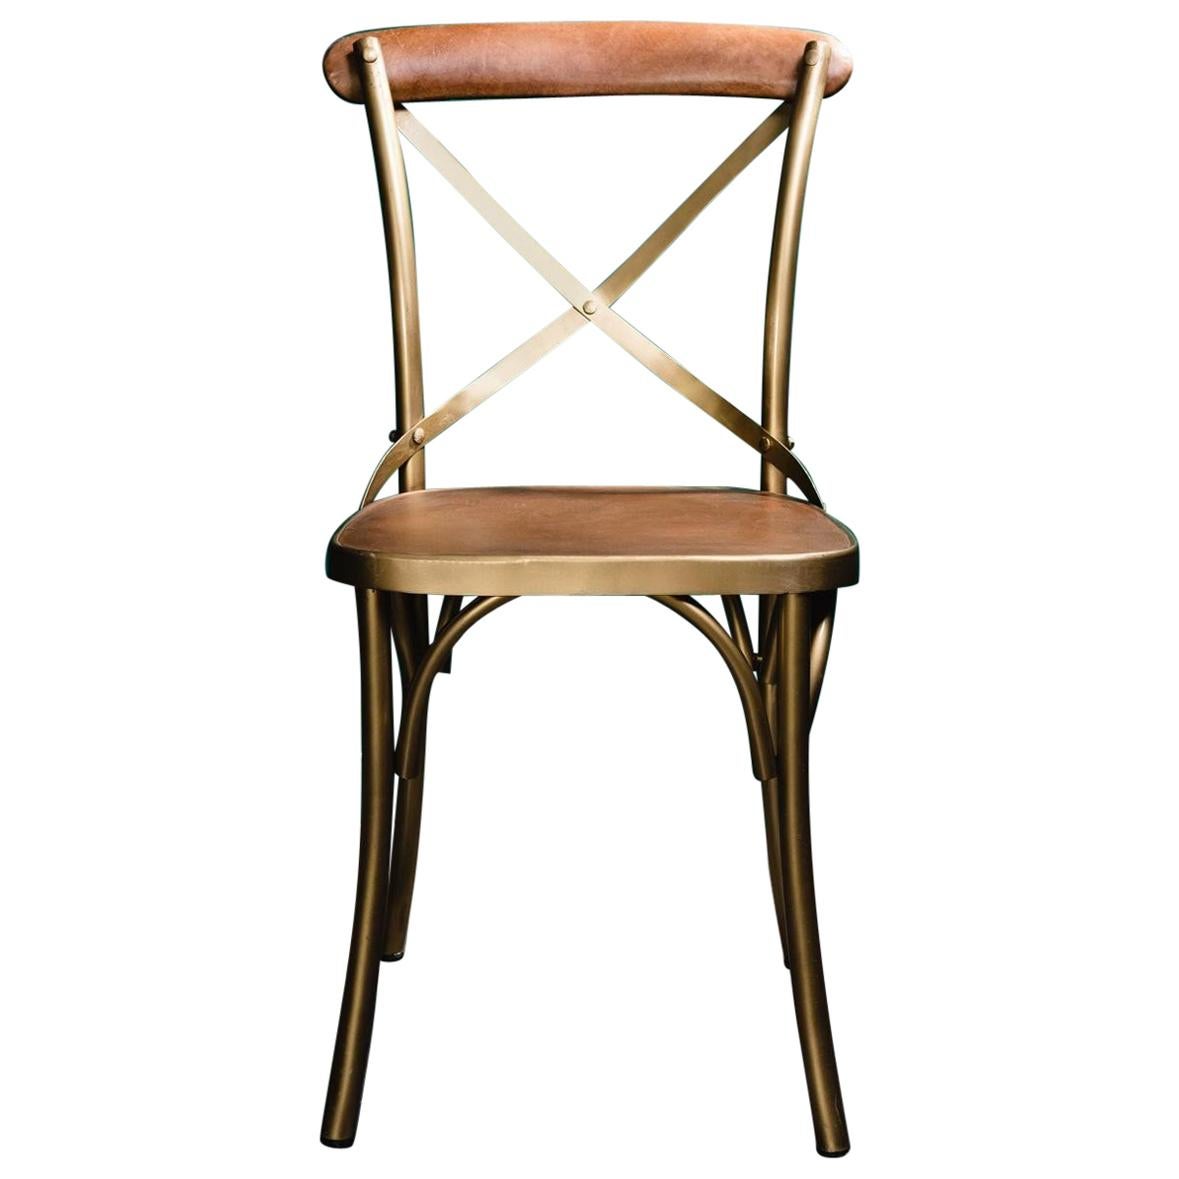 Chaise de style Bistro en métal et cuir cognac de design français